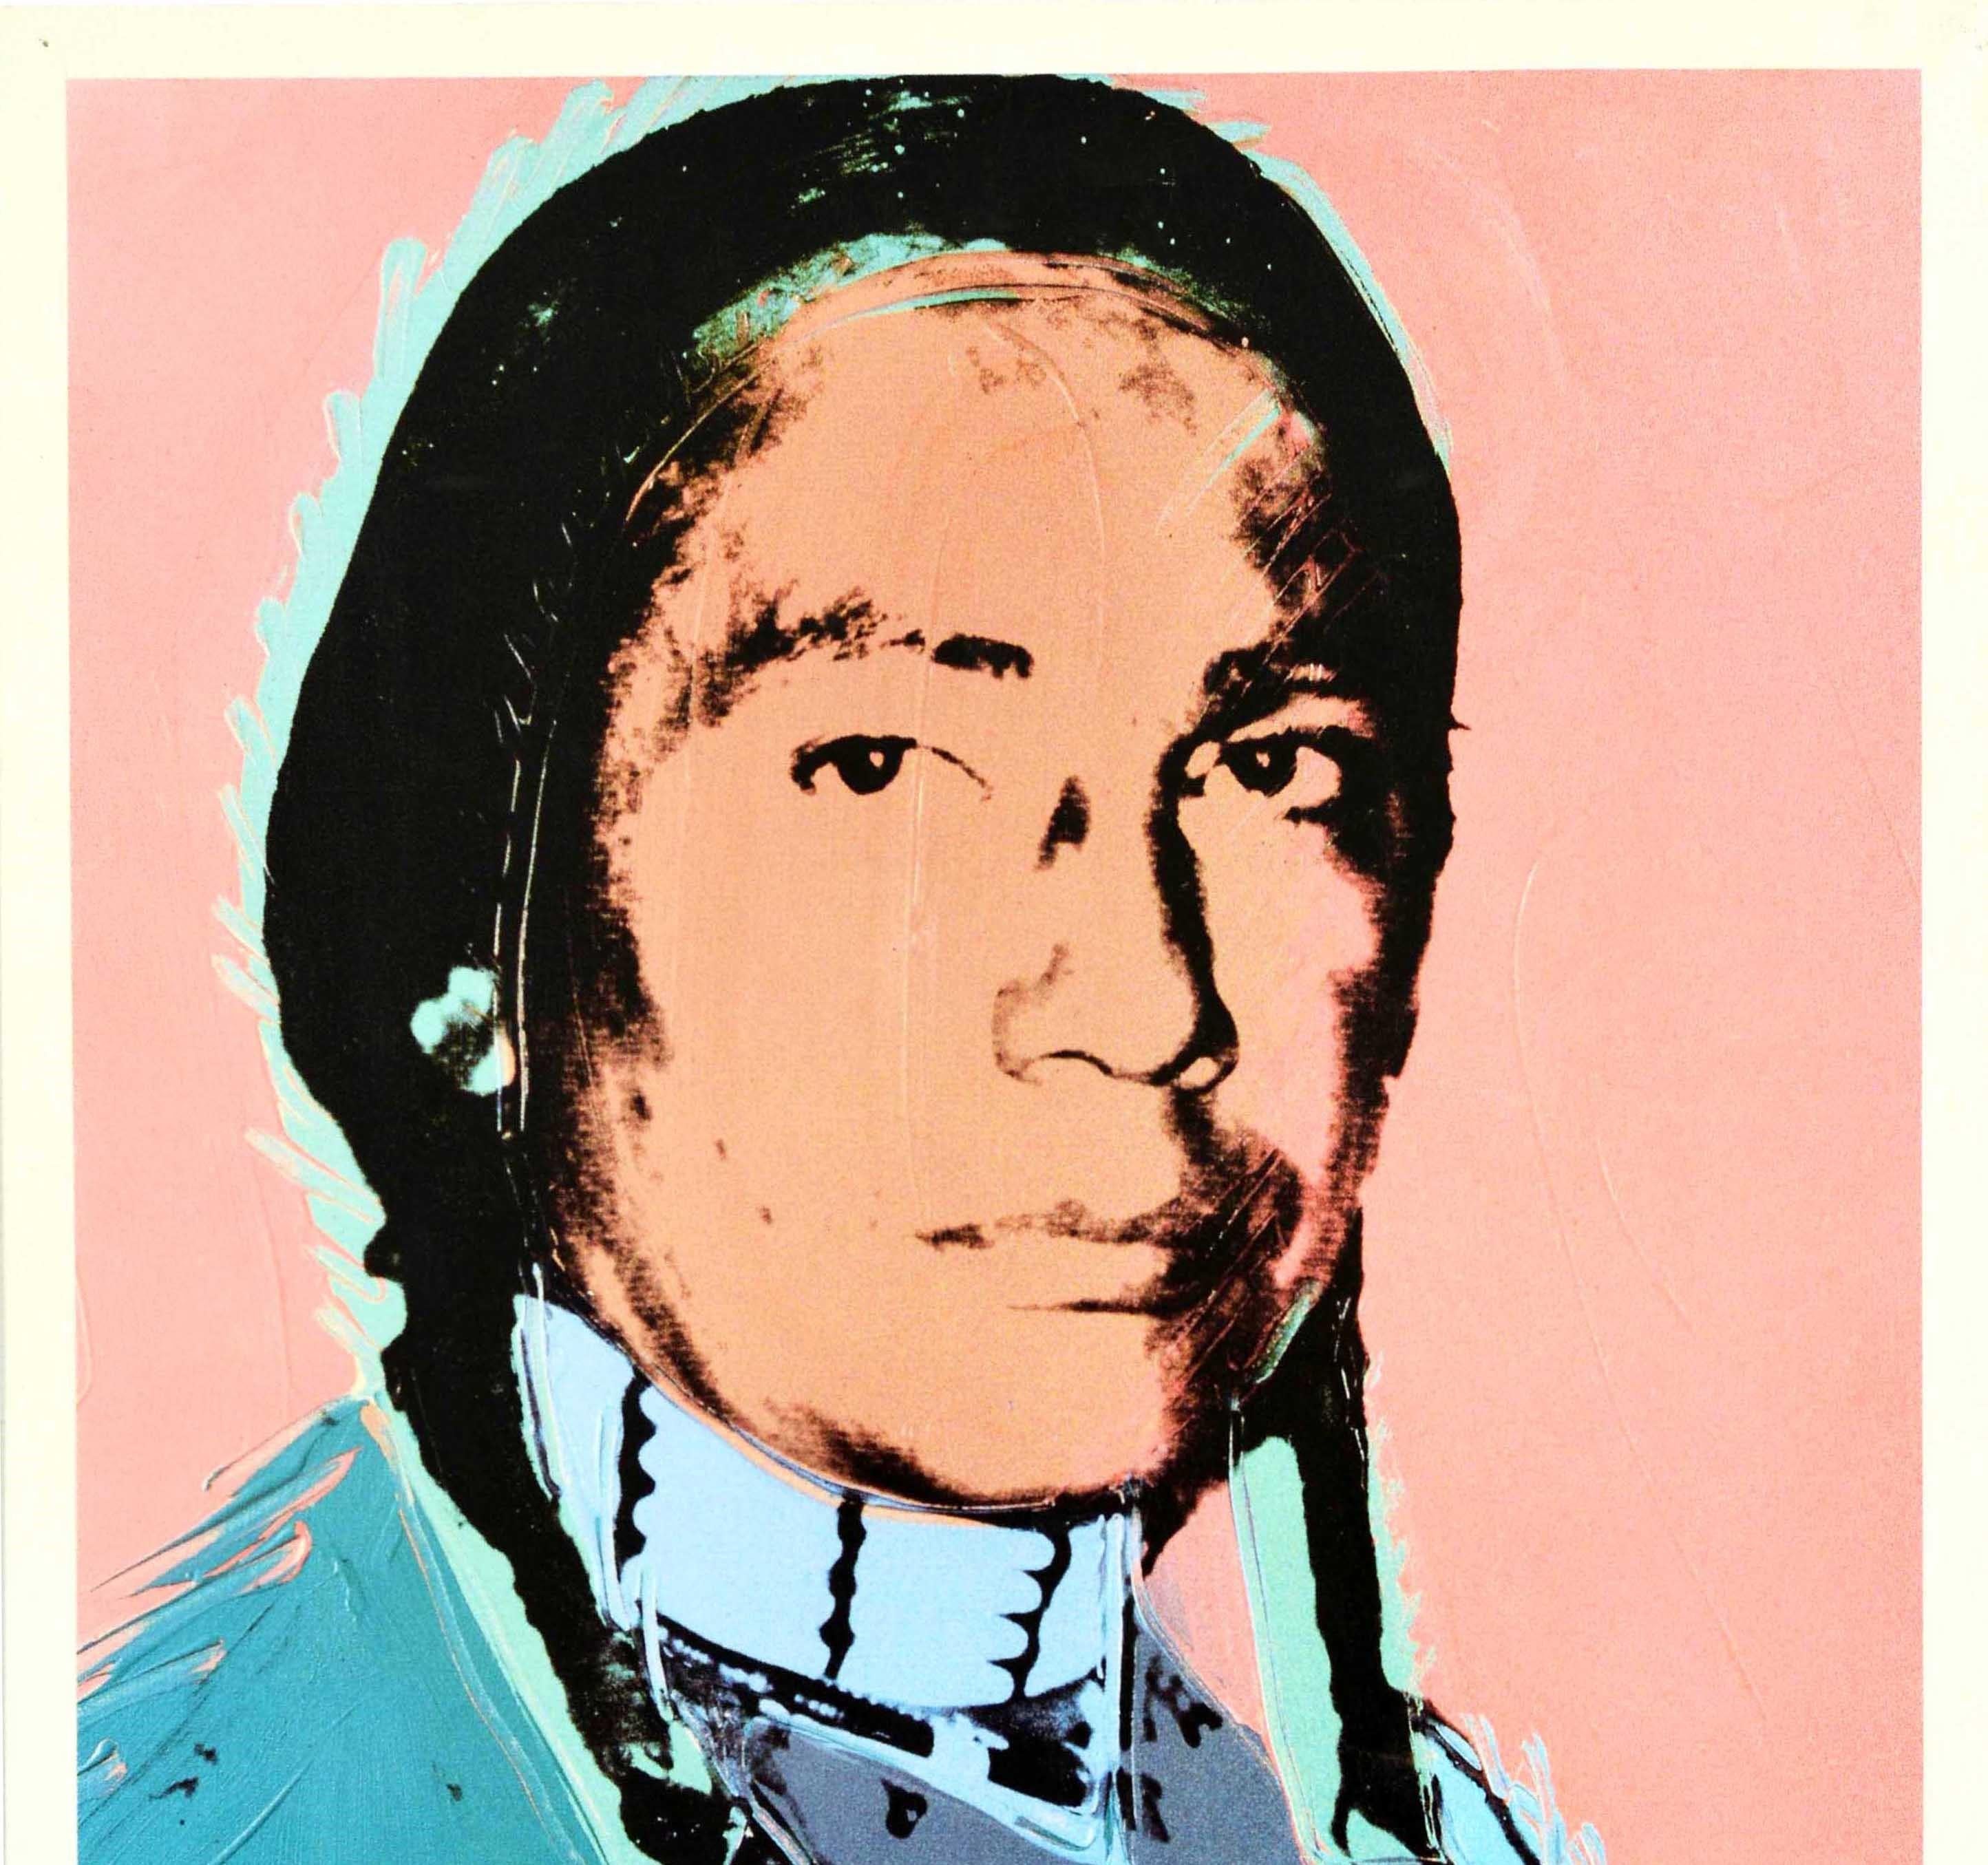 Affiche publicitaire vintage originale pour L'art des Etats-Unis / The Art of The United States, présentant un portrait Pop Art coloré de l'Américain Russell Means en costume traditionnel, réalisé par le célèbre artiste Andy Warhol (1928-1987).